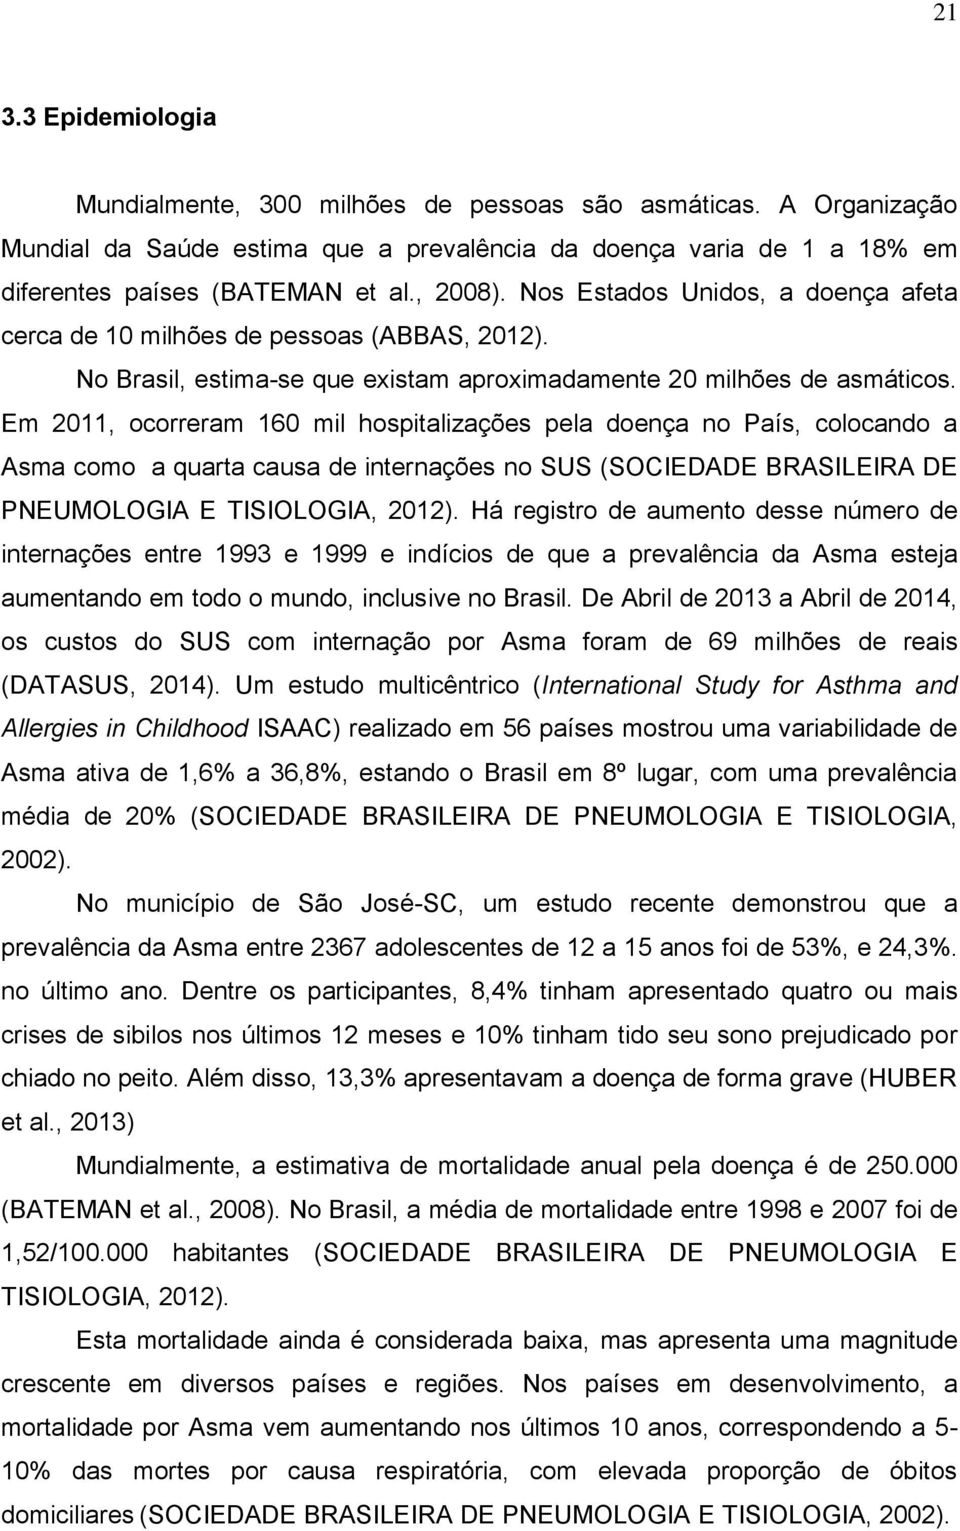 Em 2011, ocorreram 160 mil hospitalizações pela doença no País, colocando a Asma como a quarta causa de internações no SUS (SOCIEDADE BRASILEIRA DE PNEUMOLOGIA E TISIOLOGIA, 2012).